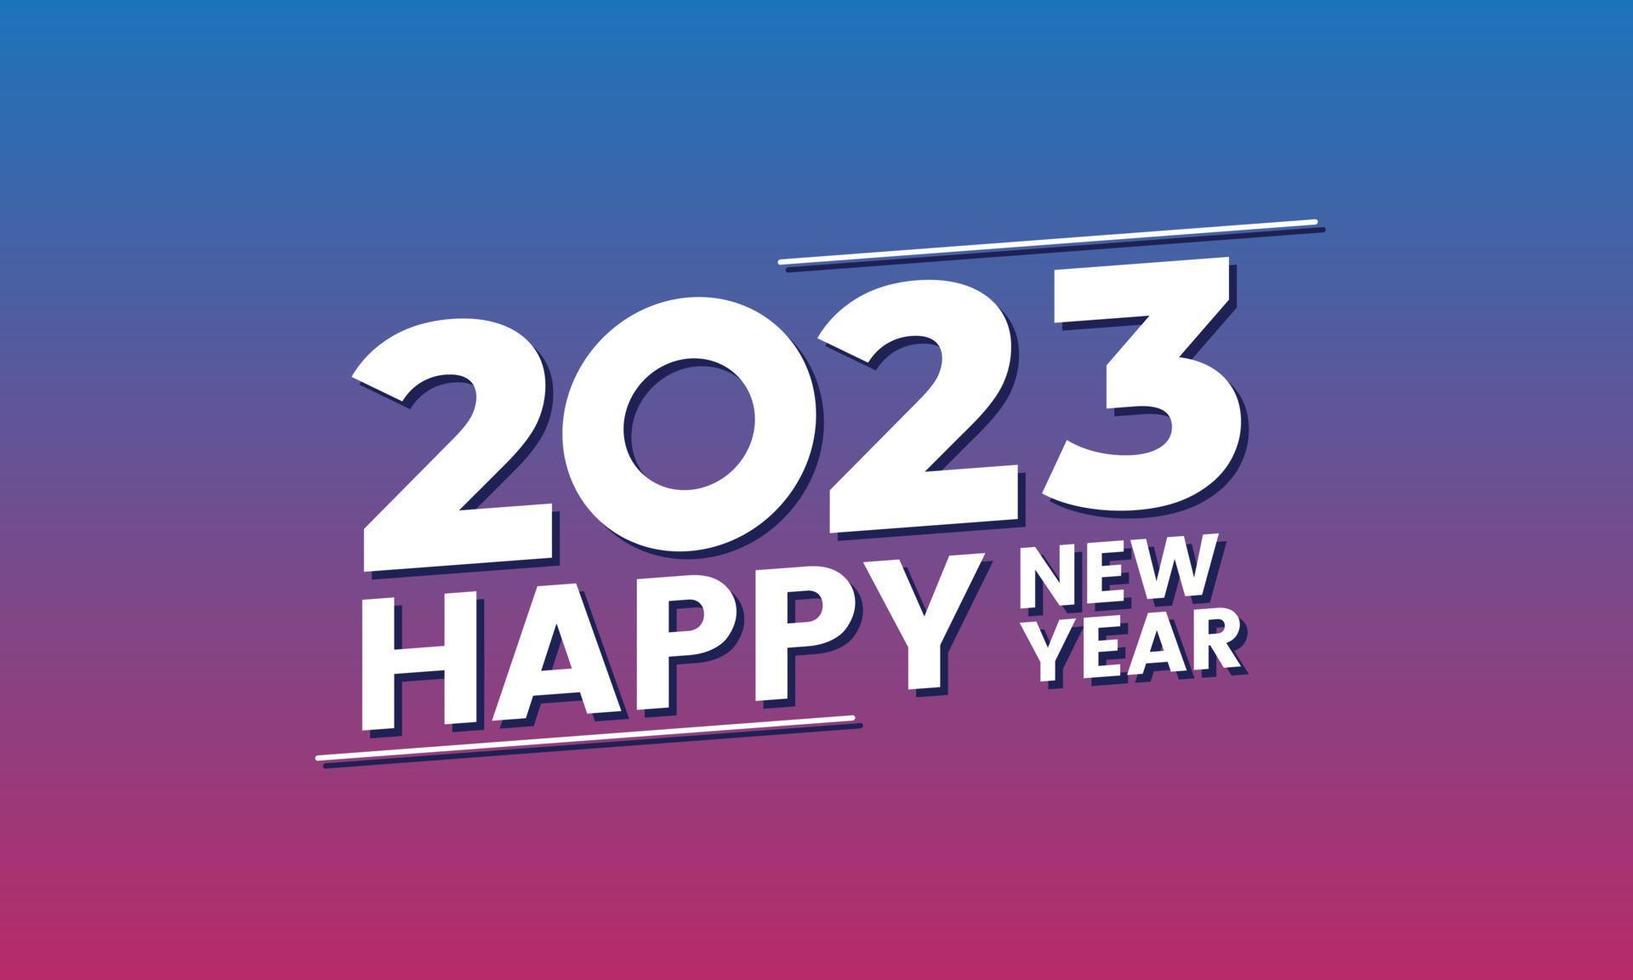 gelukkig nieuw jaar 2023. feestelijk viering. modieus en modern voor banier en media post sjabloon vector